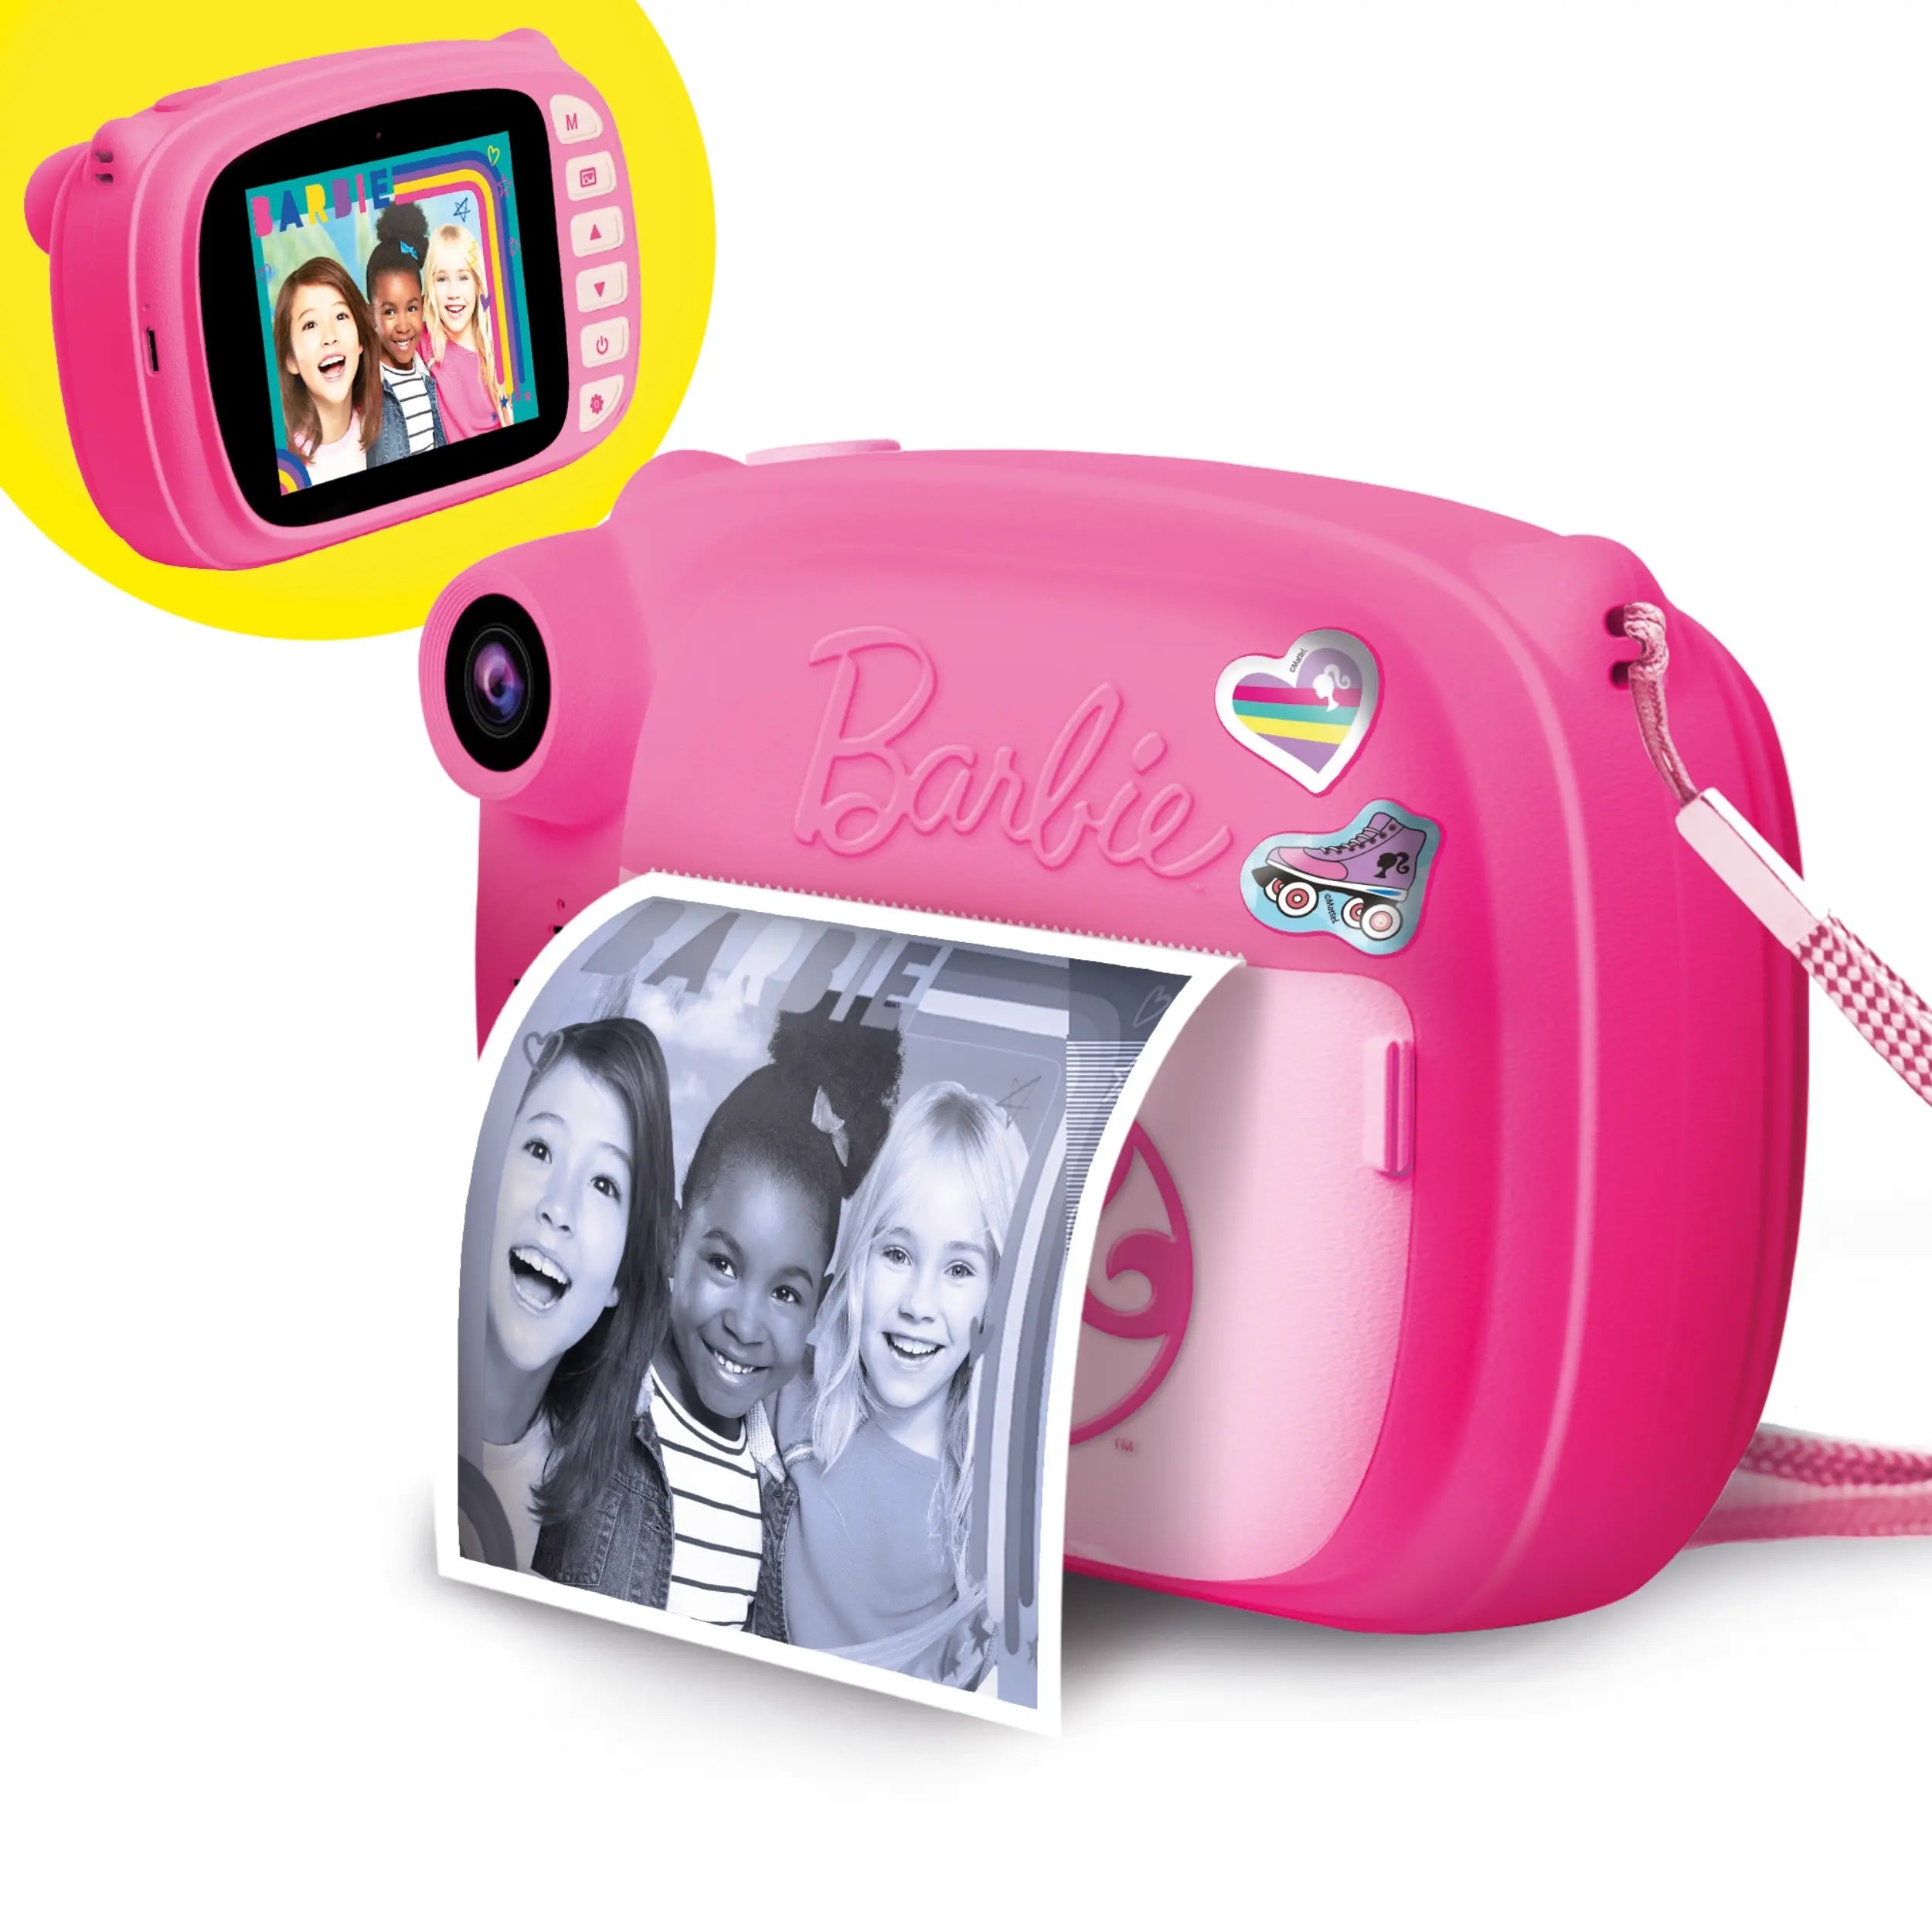 Lisciani - Barbie Print Cam 3 in 1 Instant Photos